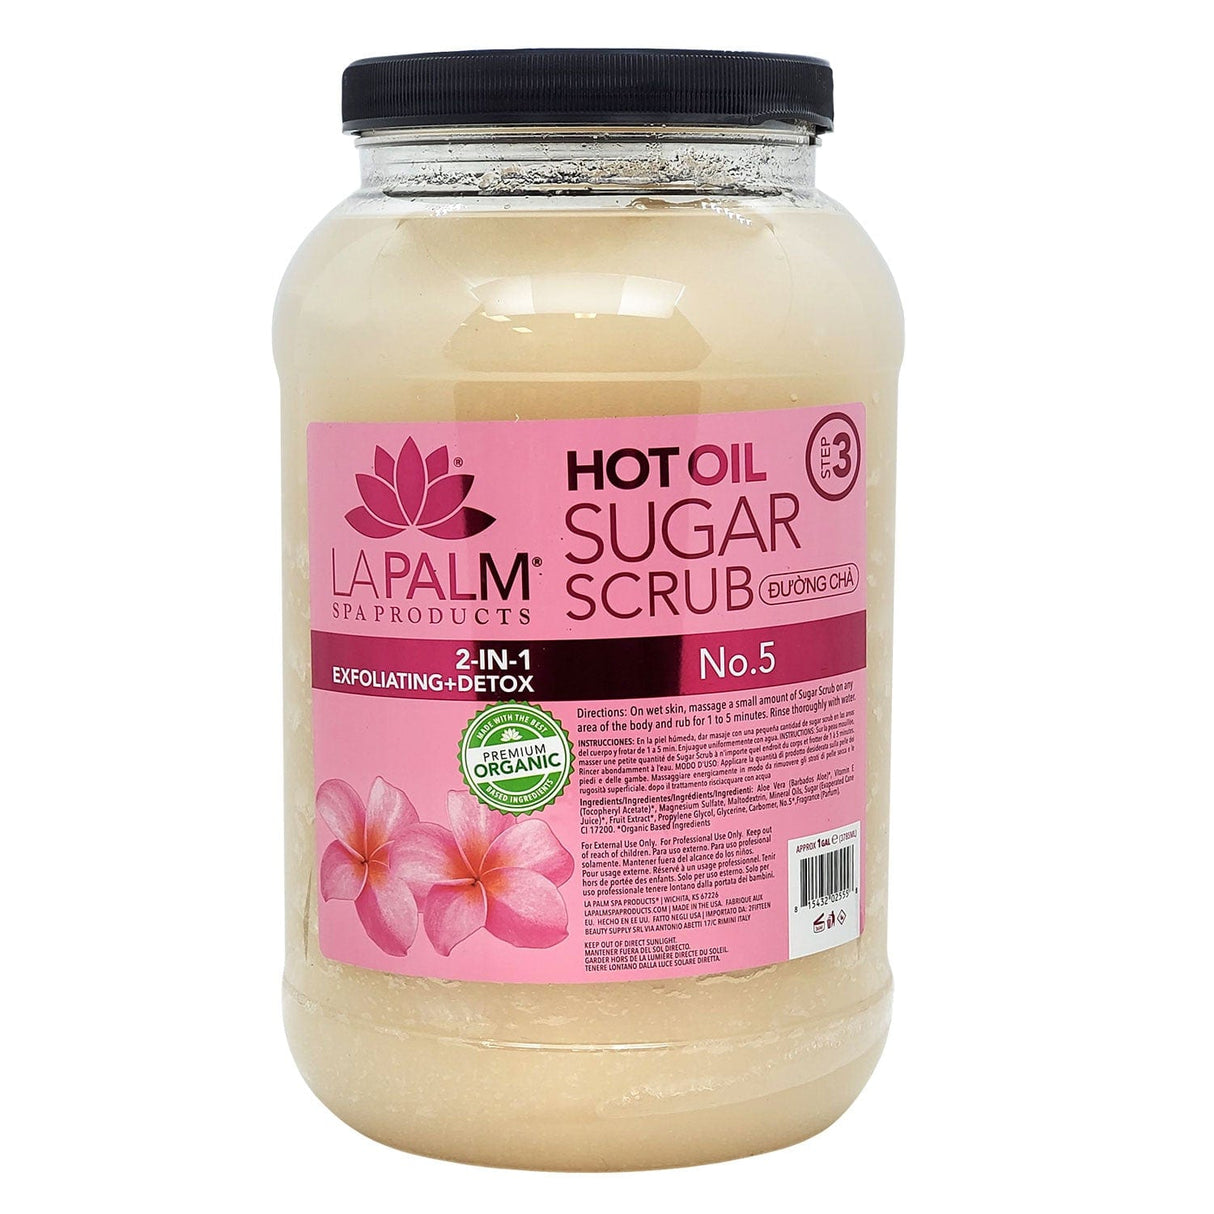 La Palm Hot Oil Sugar Scrub